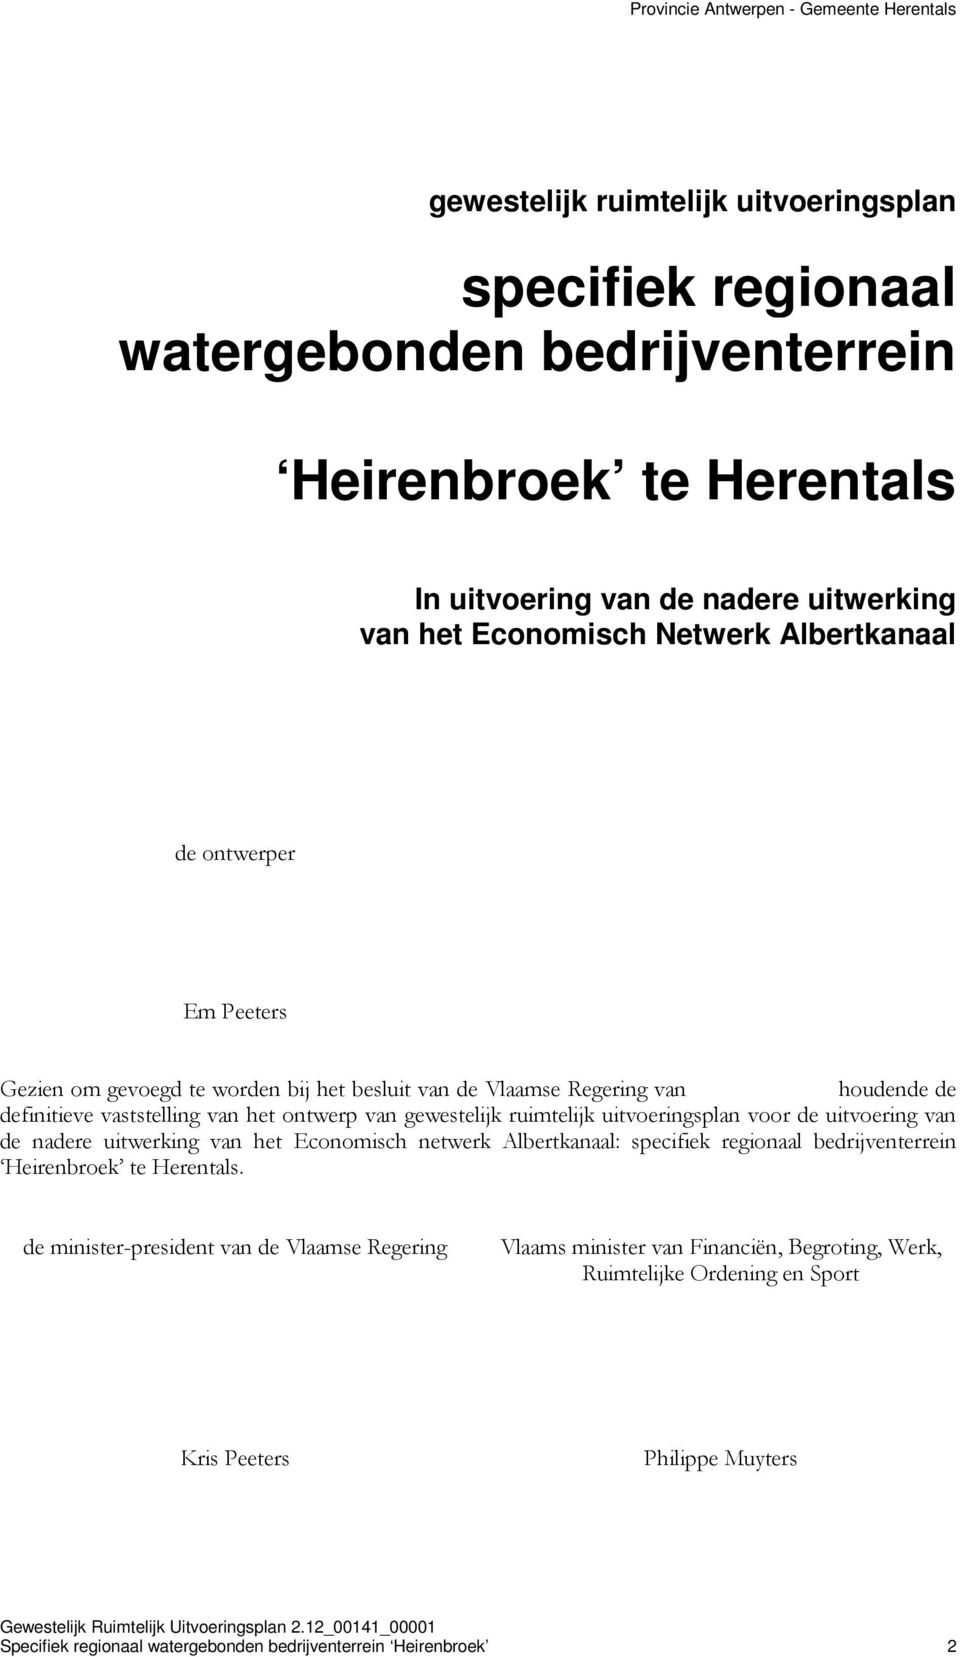 ruimtelijk uitvoeringsplan voor de uitvoering van de nadere uitwerking van het Economisch netwerk Albertkanaal: specifiek regionaal bedrijventerrein Heirenbroek te Herentals.